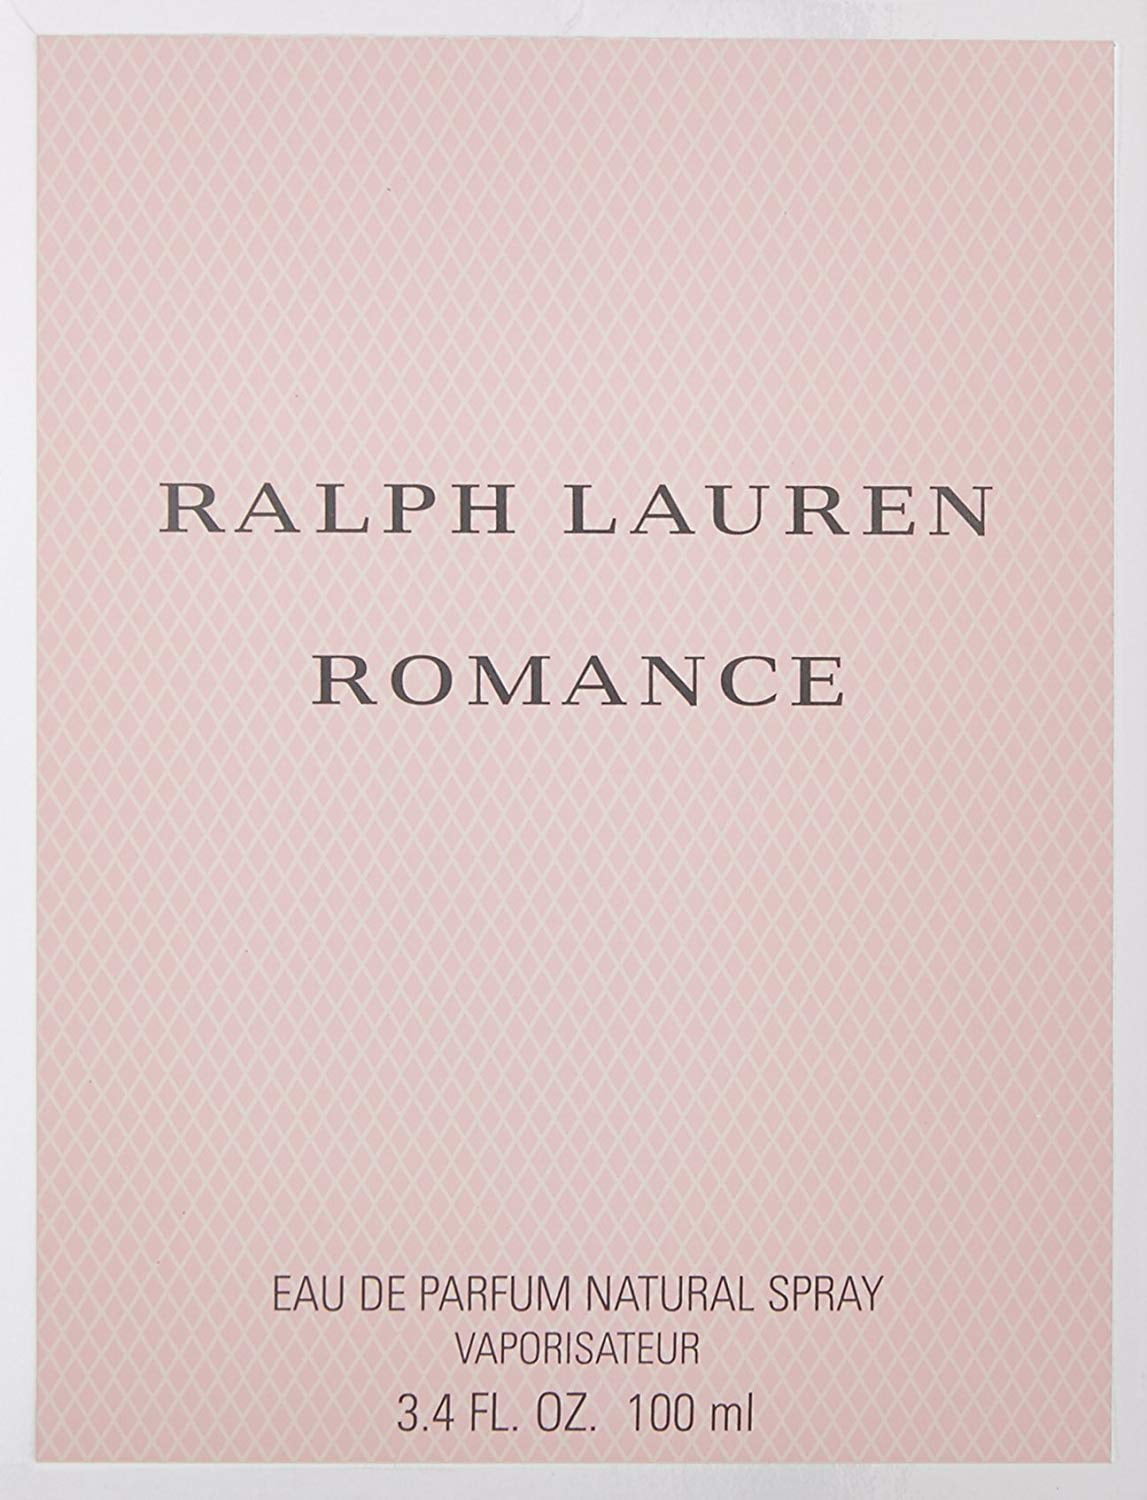 Fingerhut - Ralph Lauren Romance Eau De Parfum Spray - 3.4 Oz.